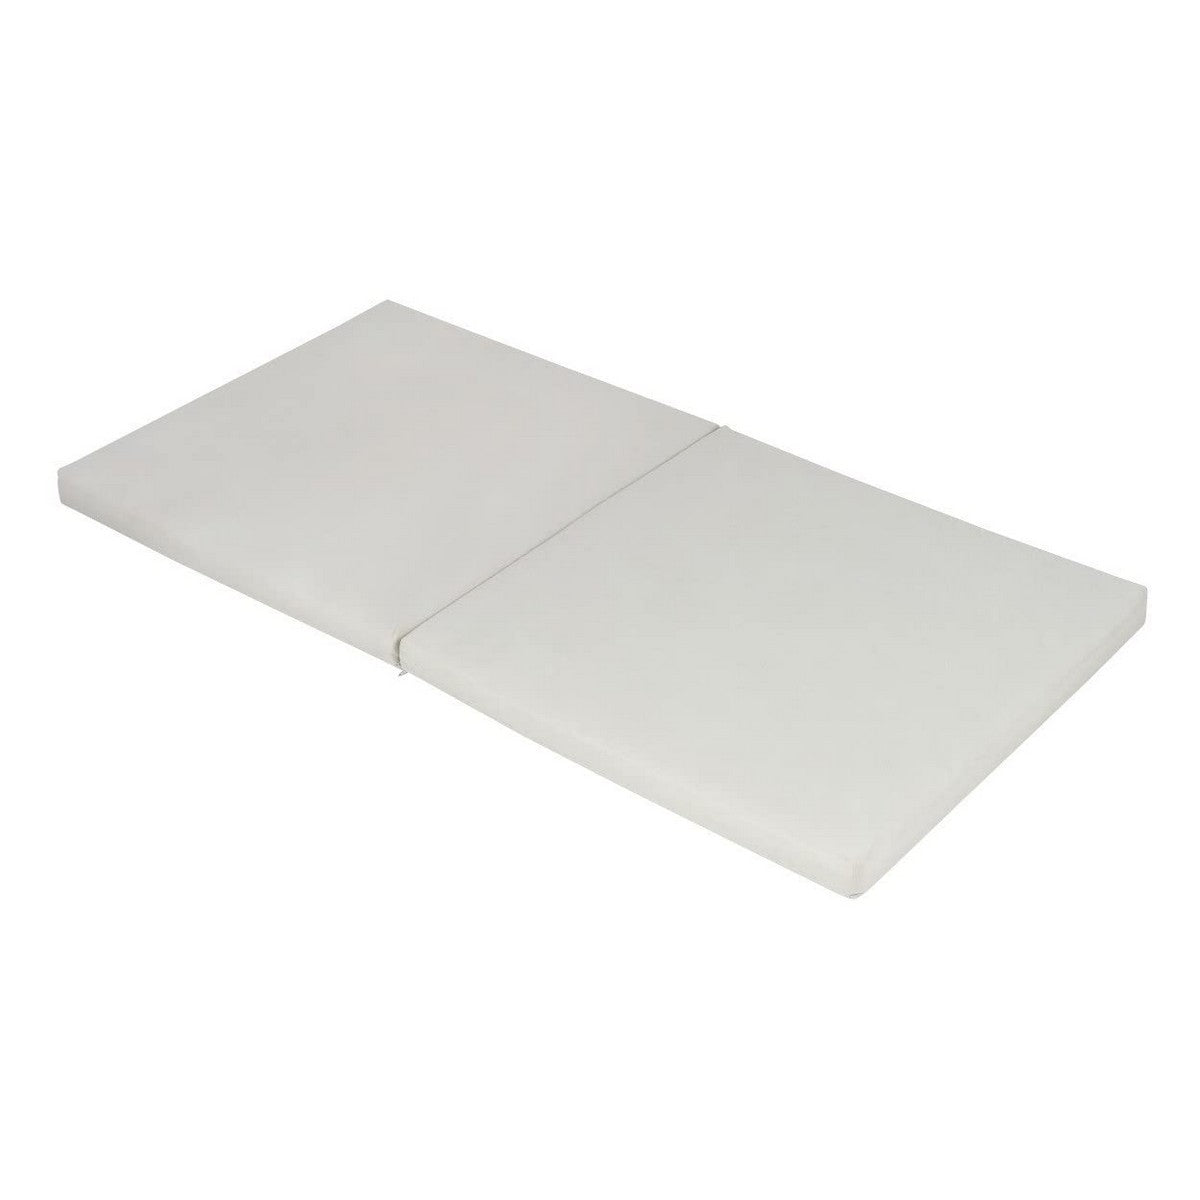 Cot mattress Tineo Foldable